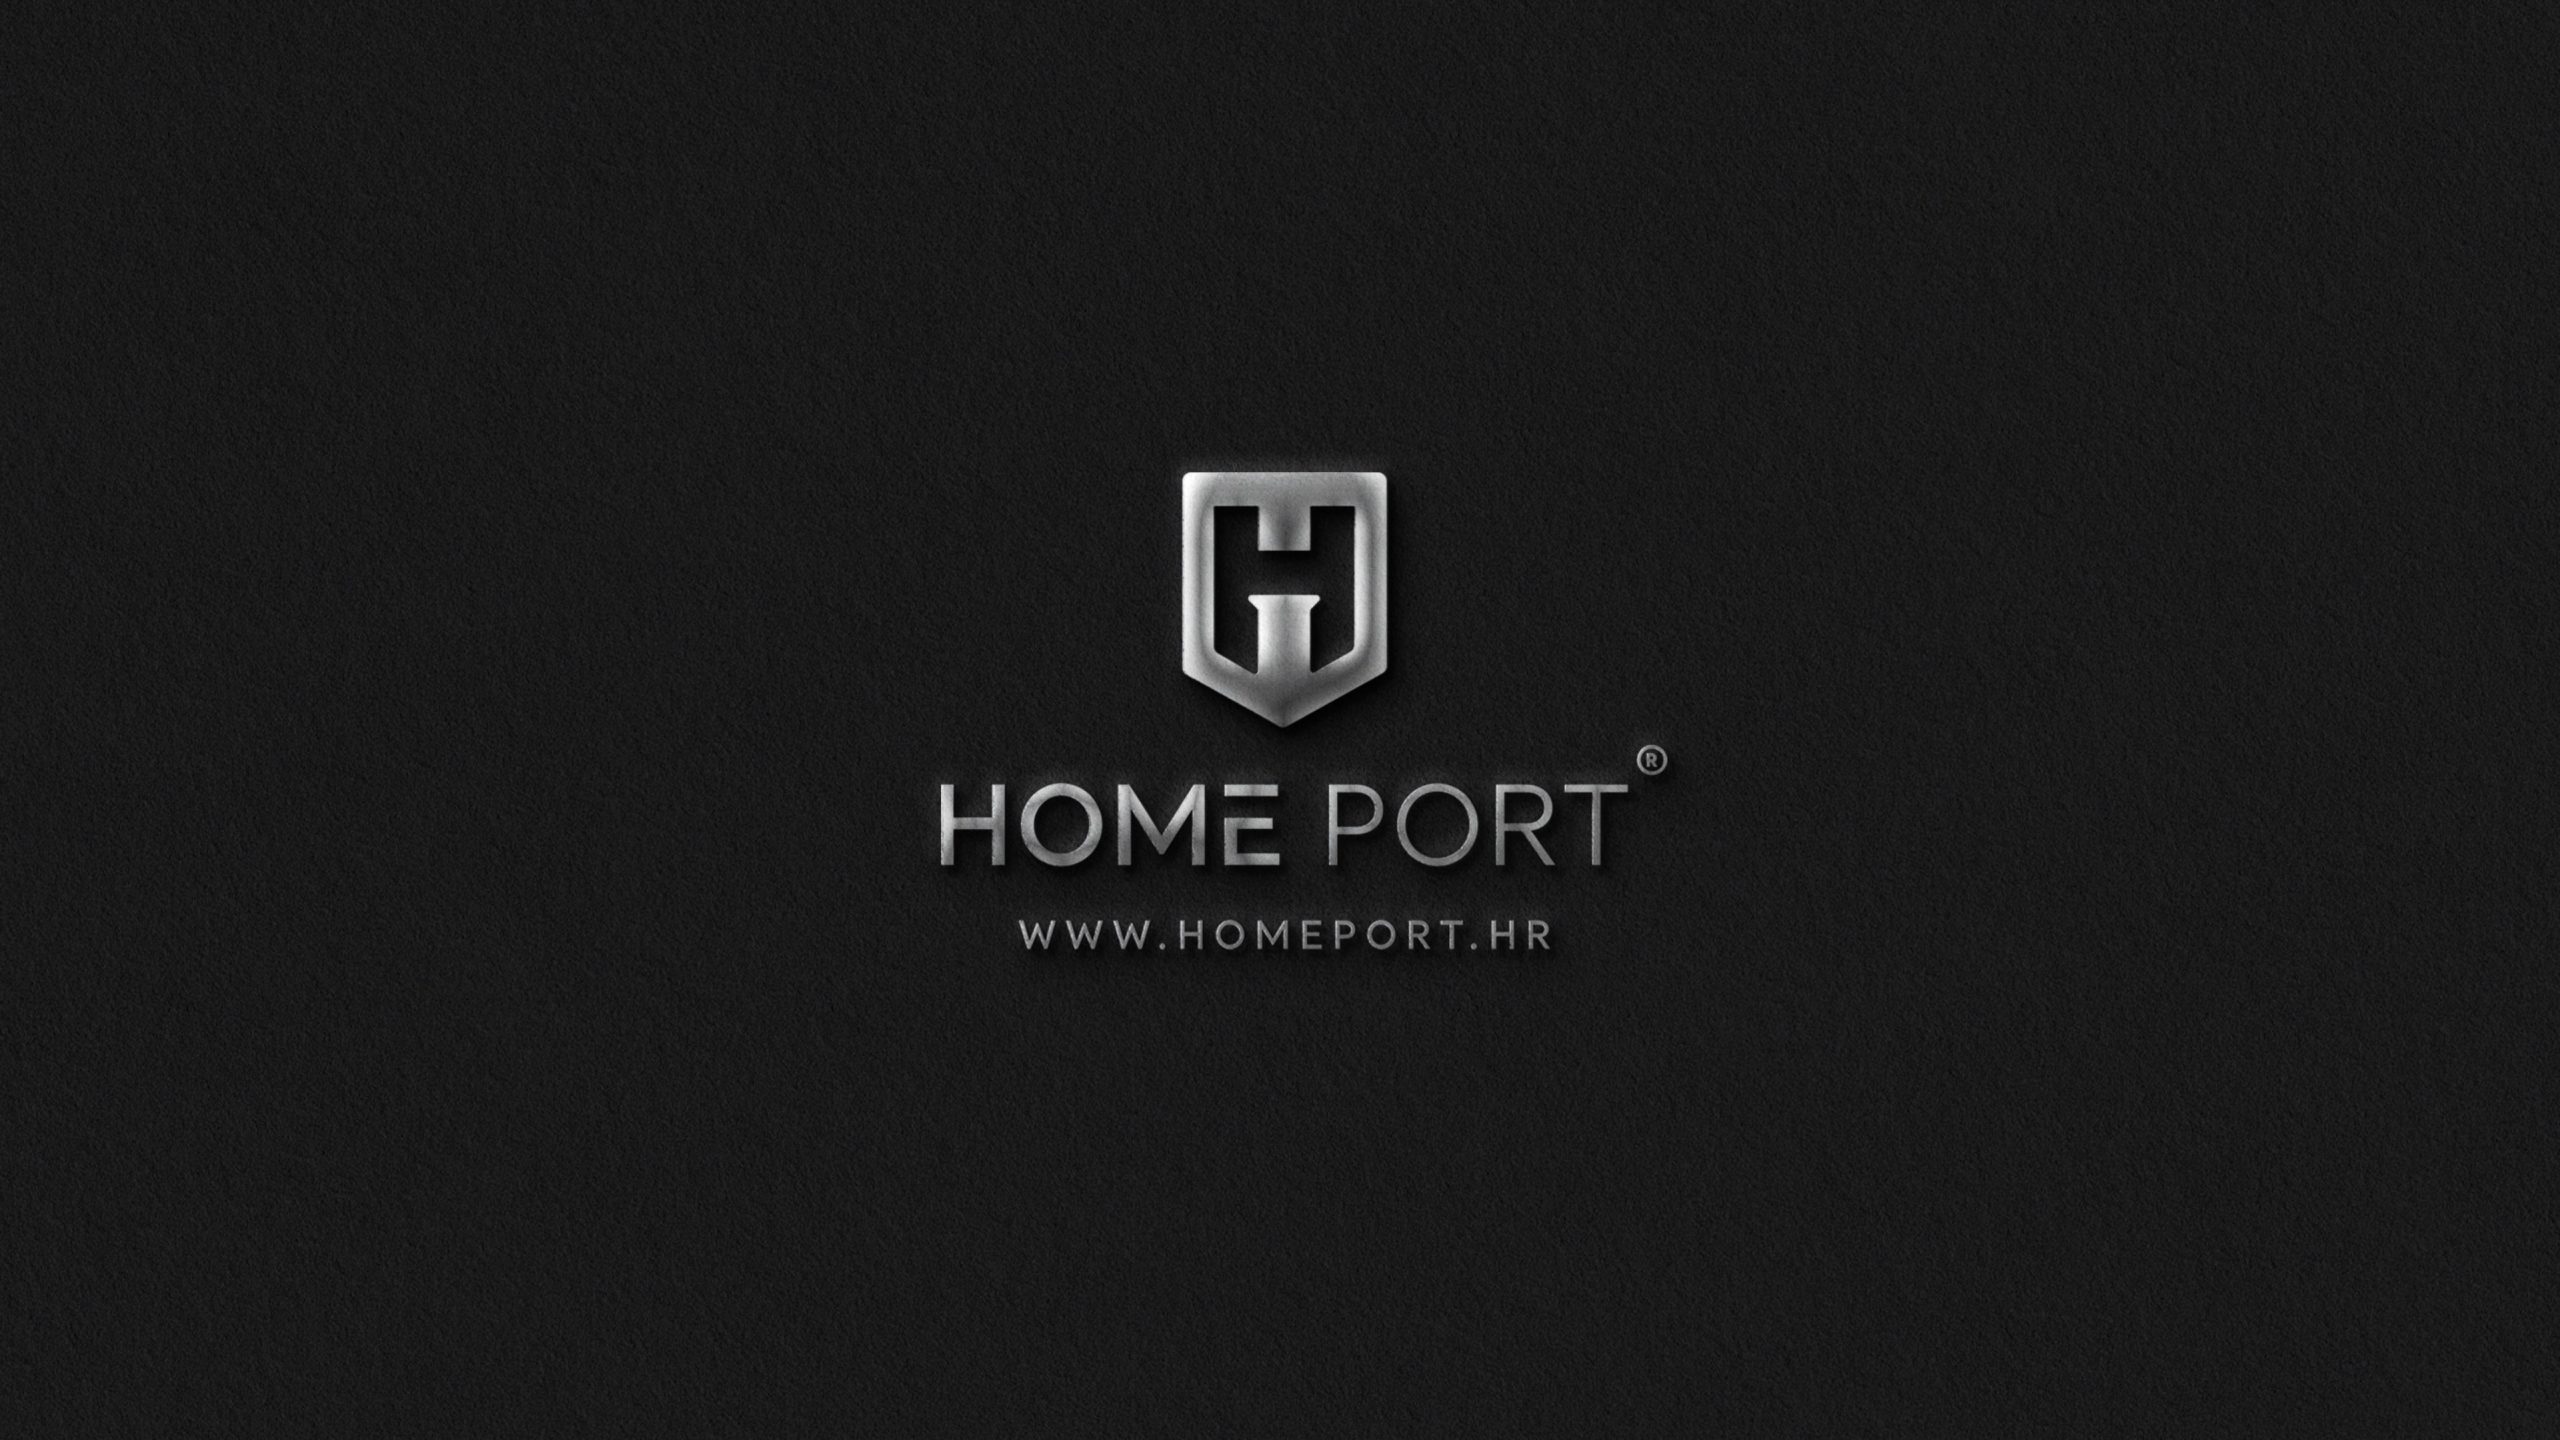 Home Port